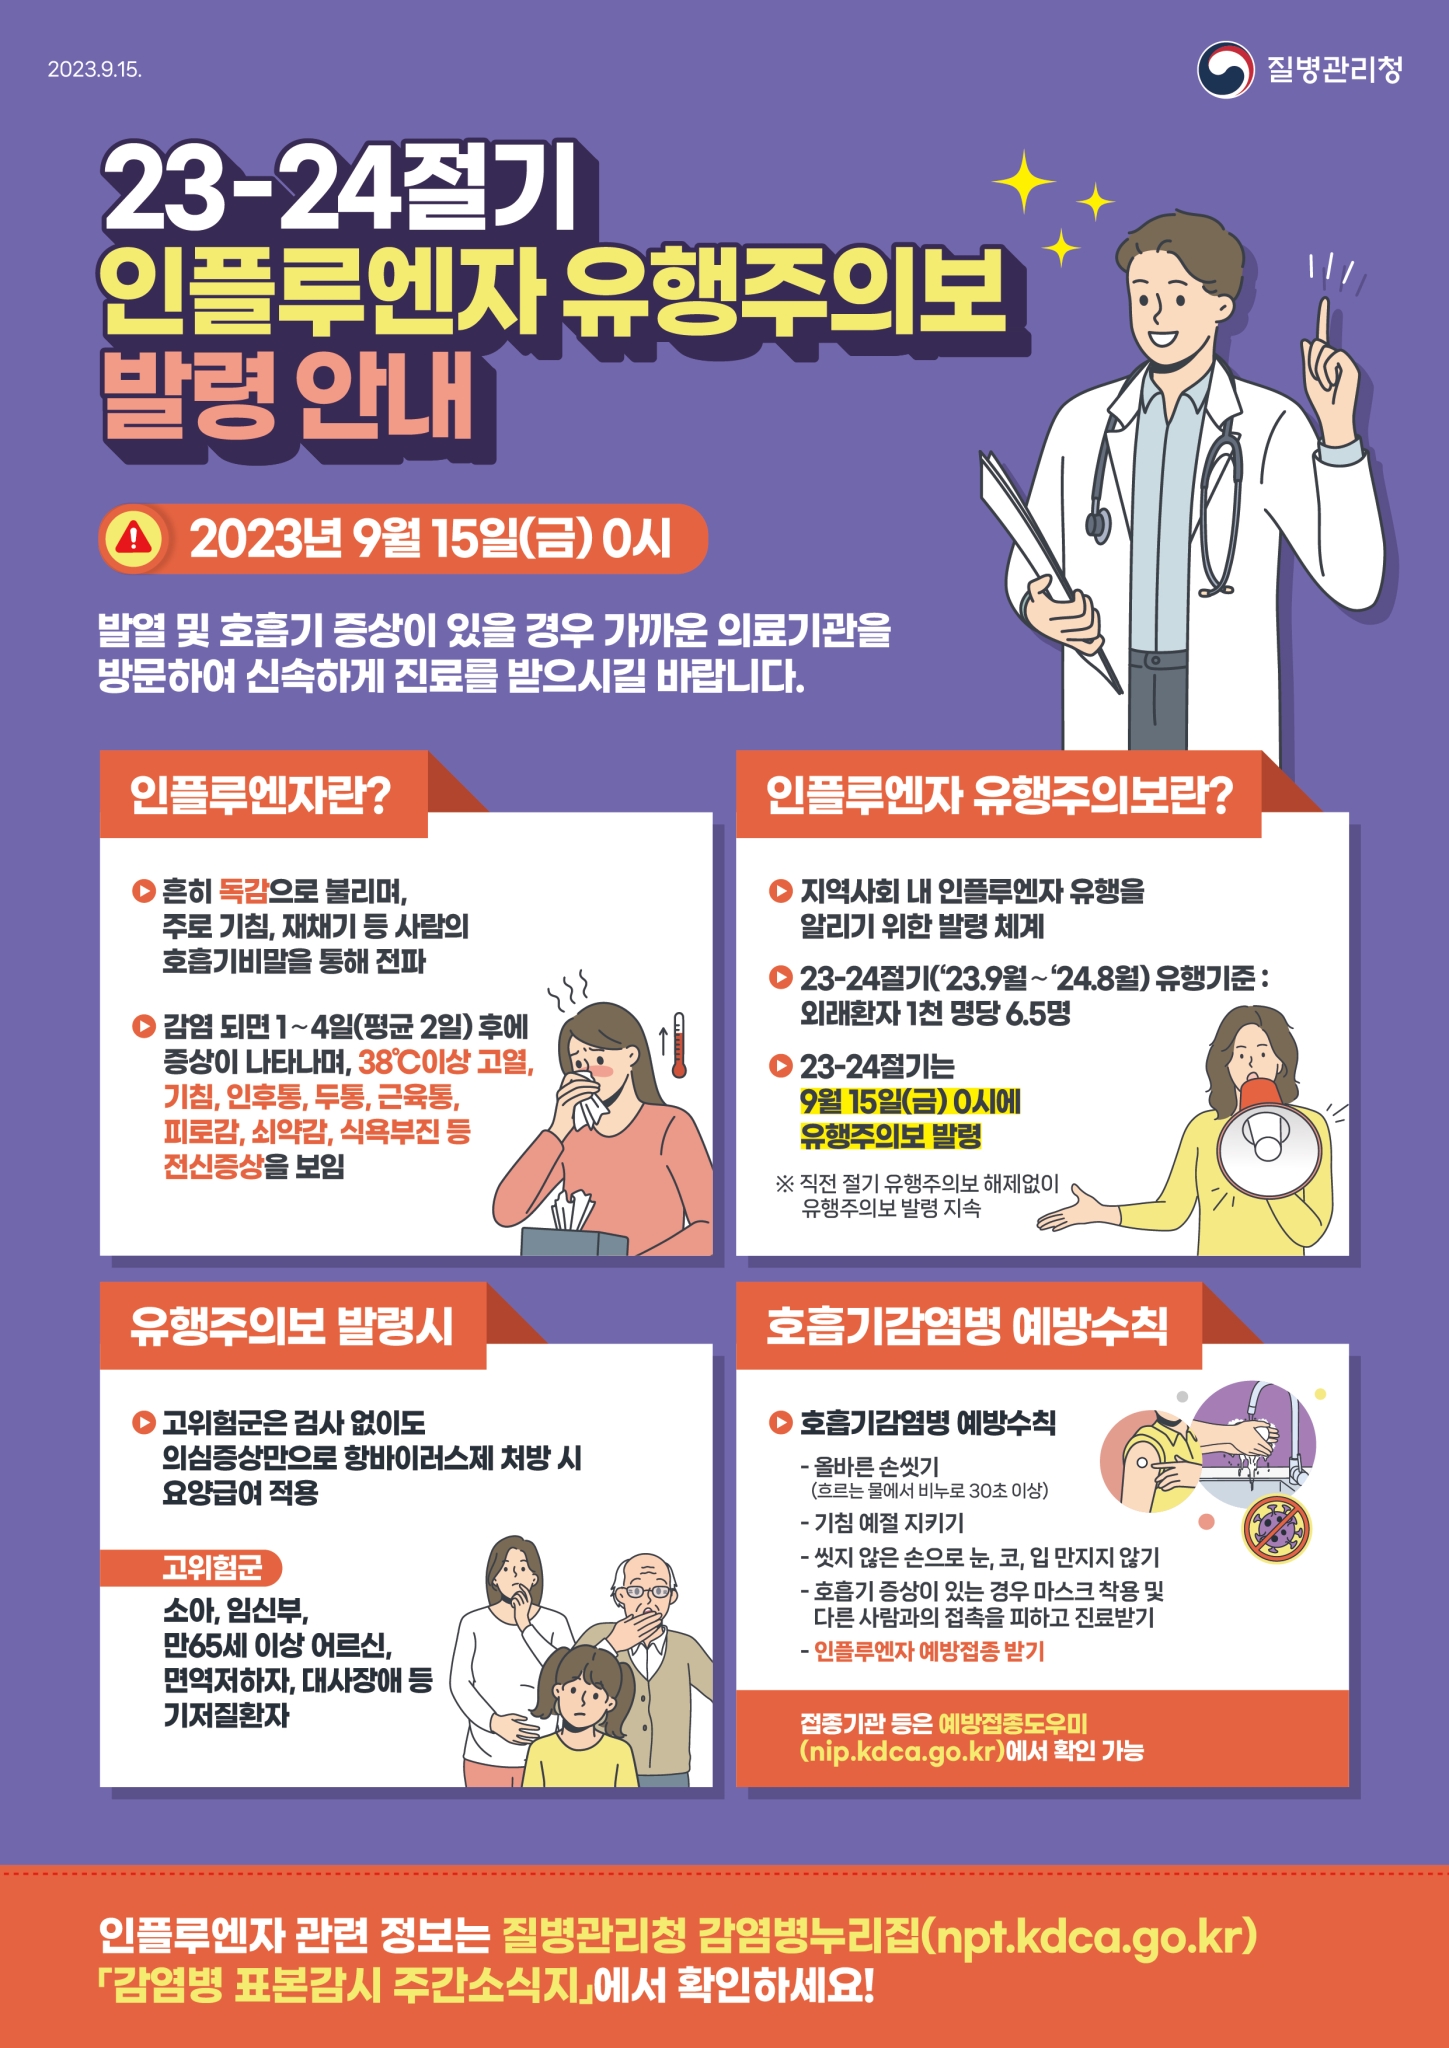 전라북도교육청 문예체건강과_1. 2023-2024절기 인플루엔자 유행주의보 발령 포스터